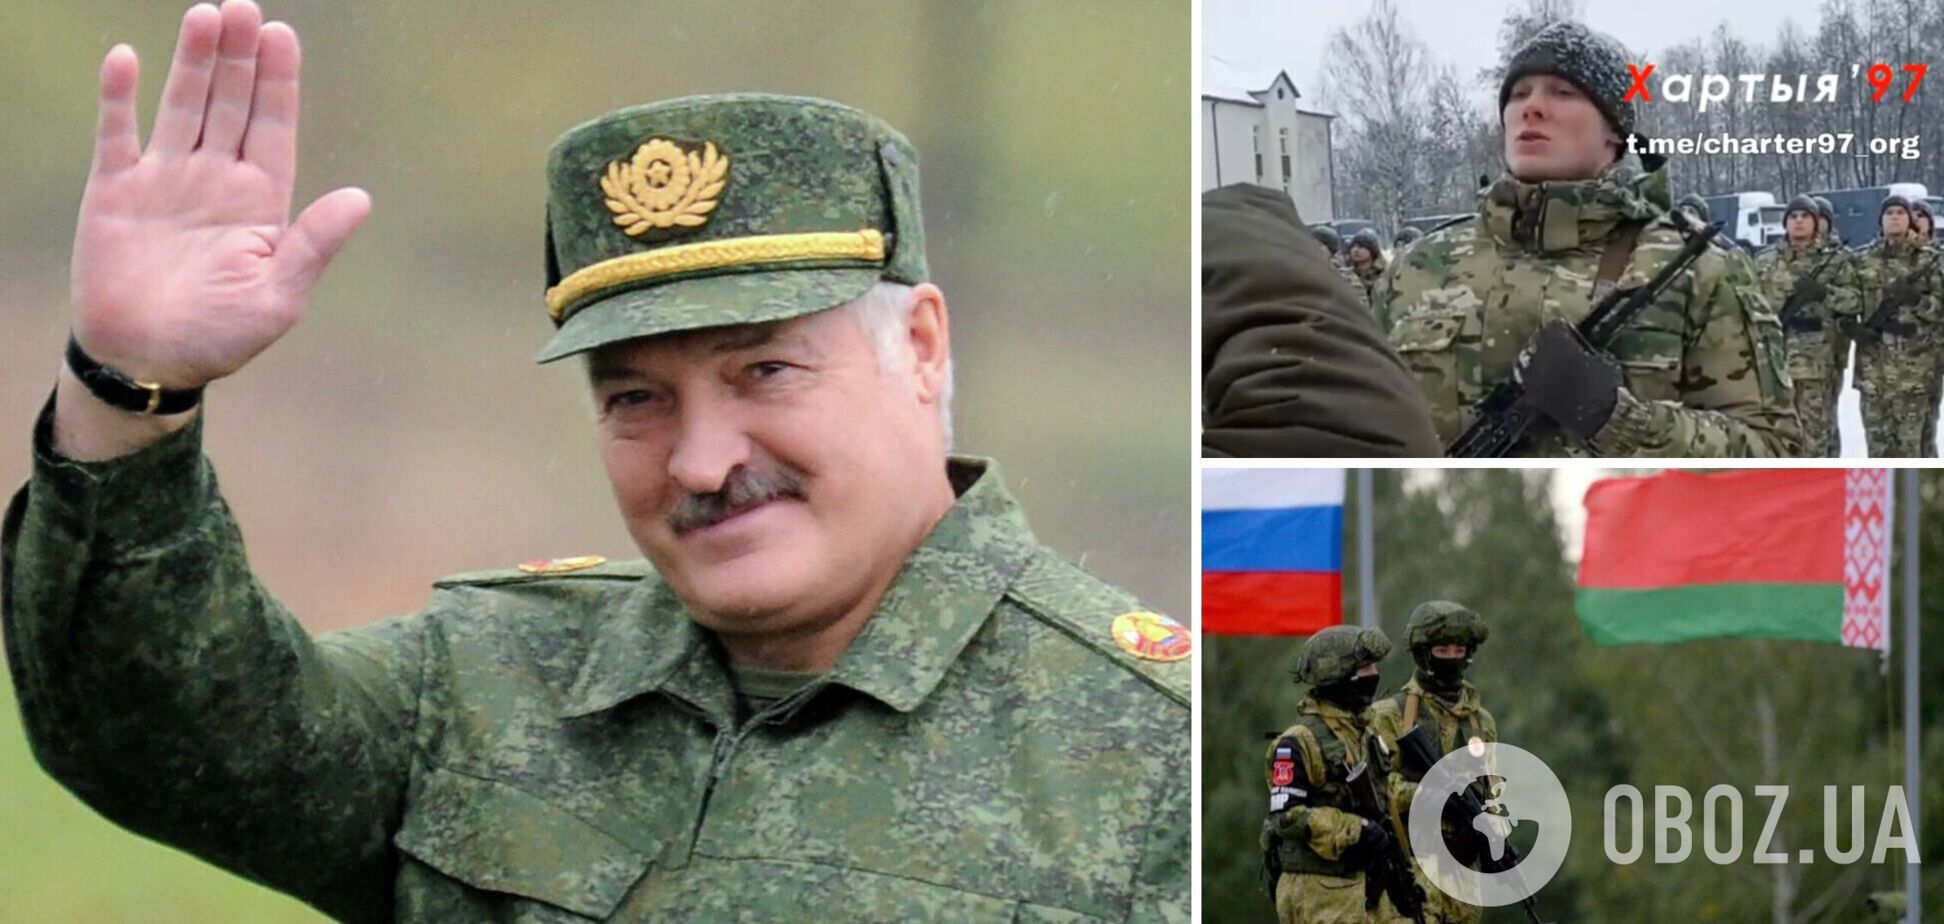 Служу 'президенту', а не народу: в Беларуси военных заставили присягать на верность Лукашенко. Видео